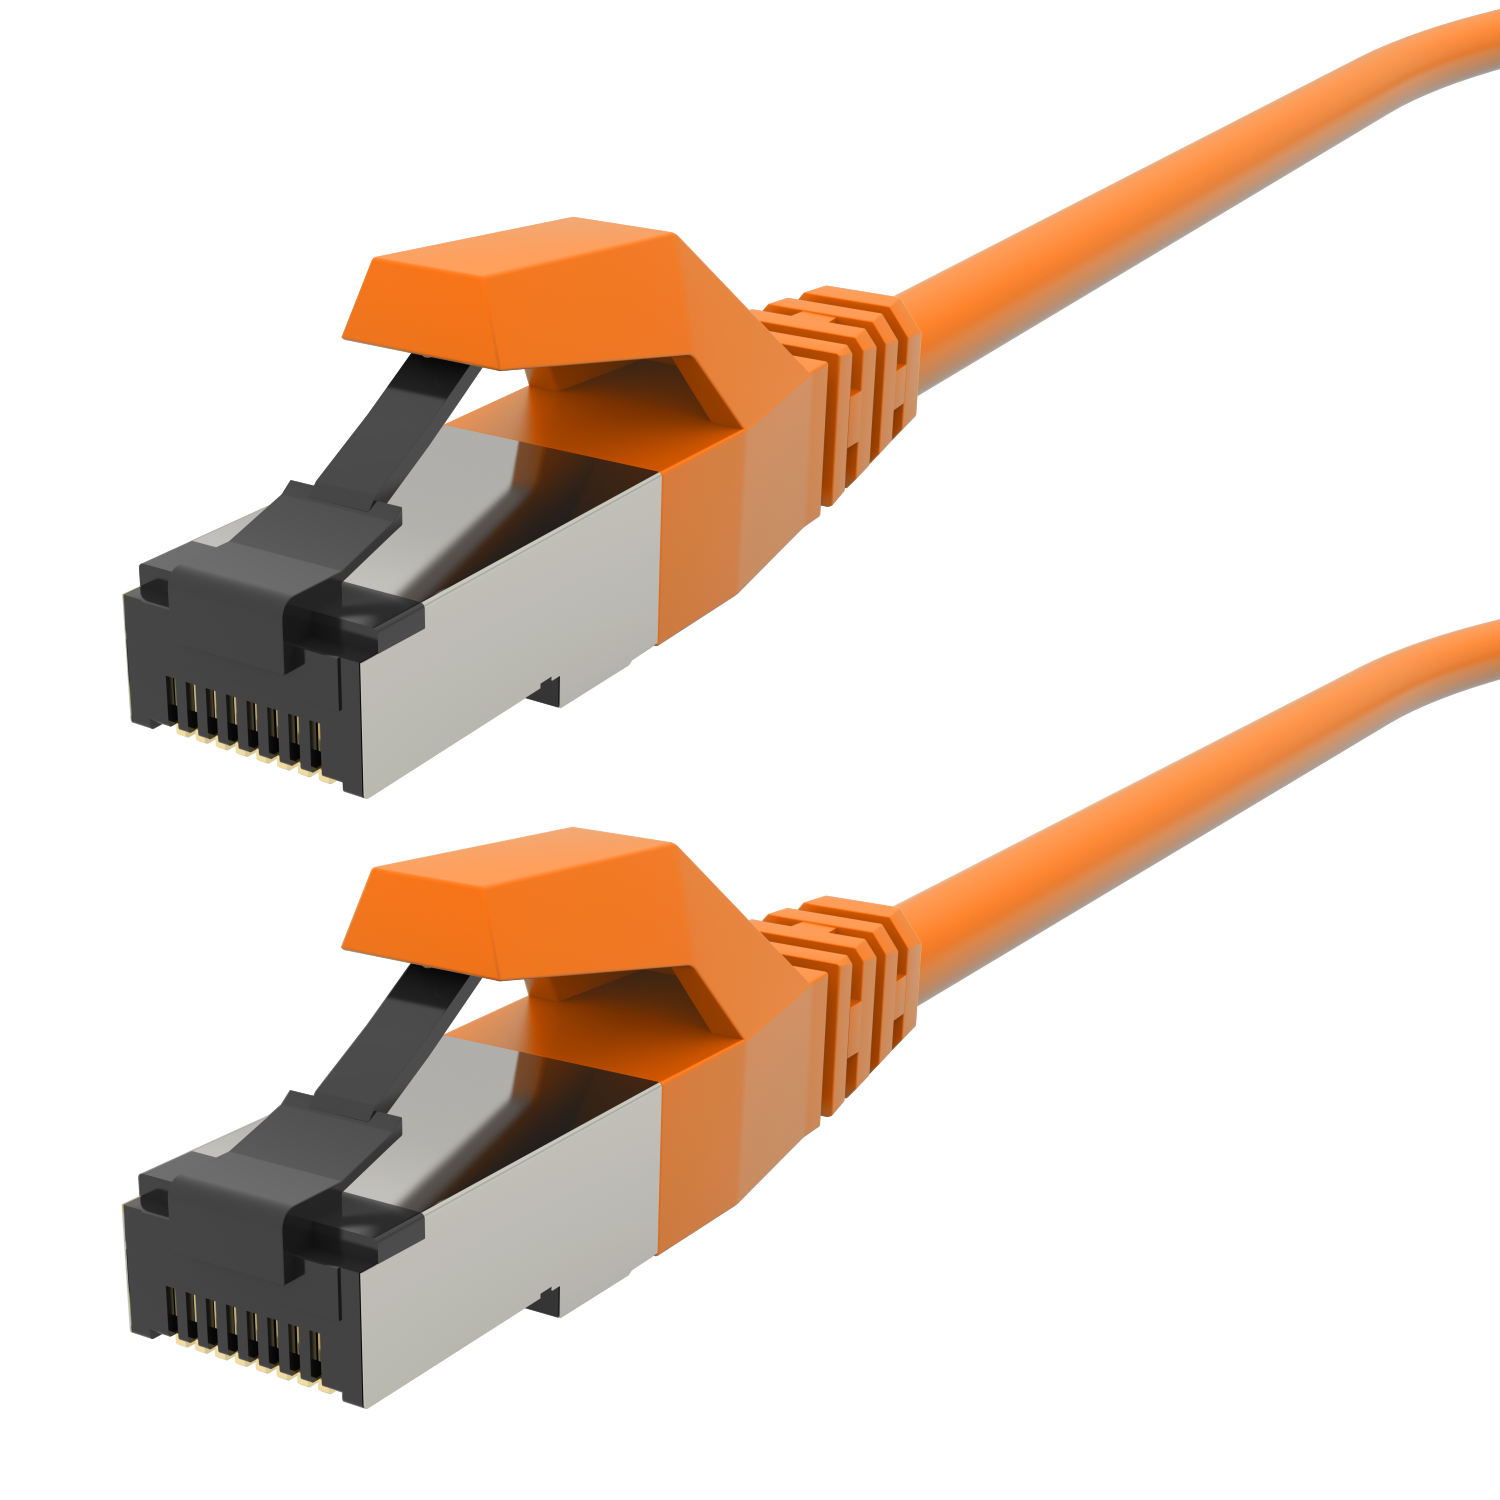 AIXONTEC 3,0m Cat.6A RJ45 Lankabel Gigabit, Netzwerkkabel, 3,0 m 10 Patchkabel Ethernetkabel